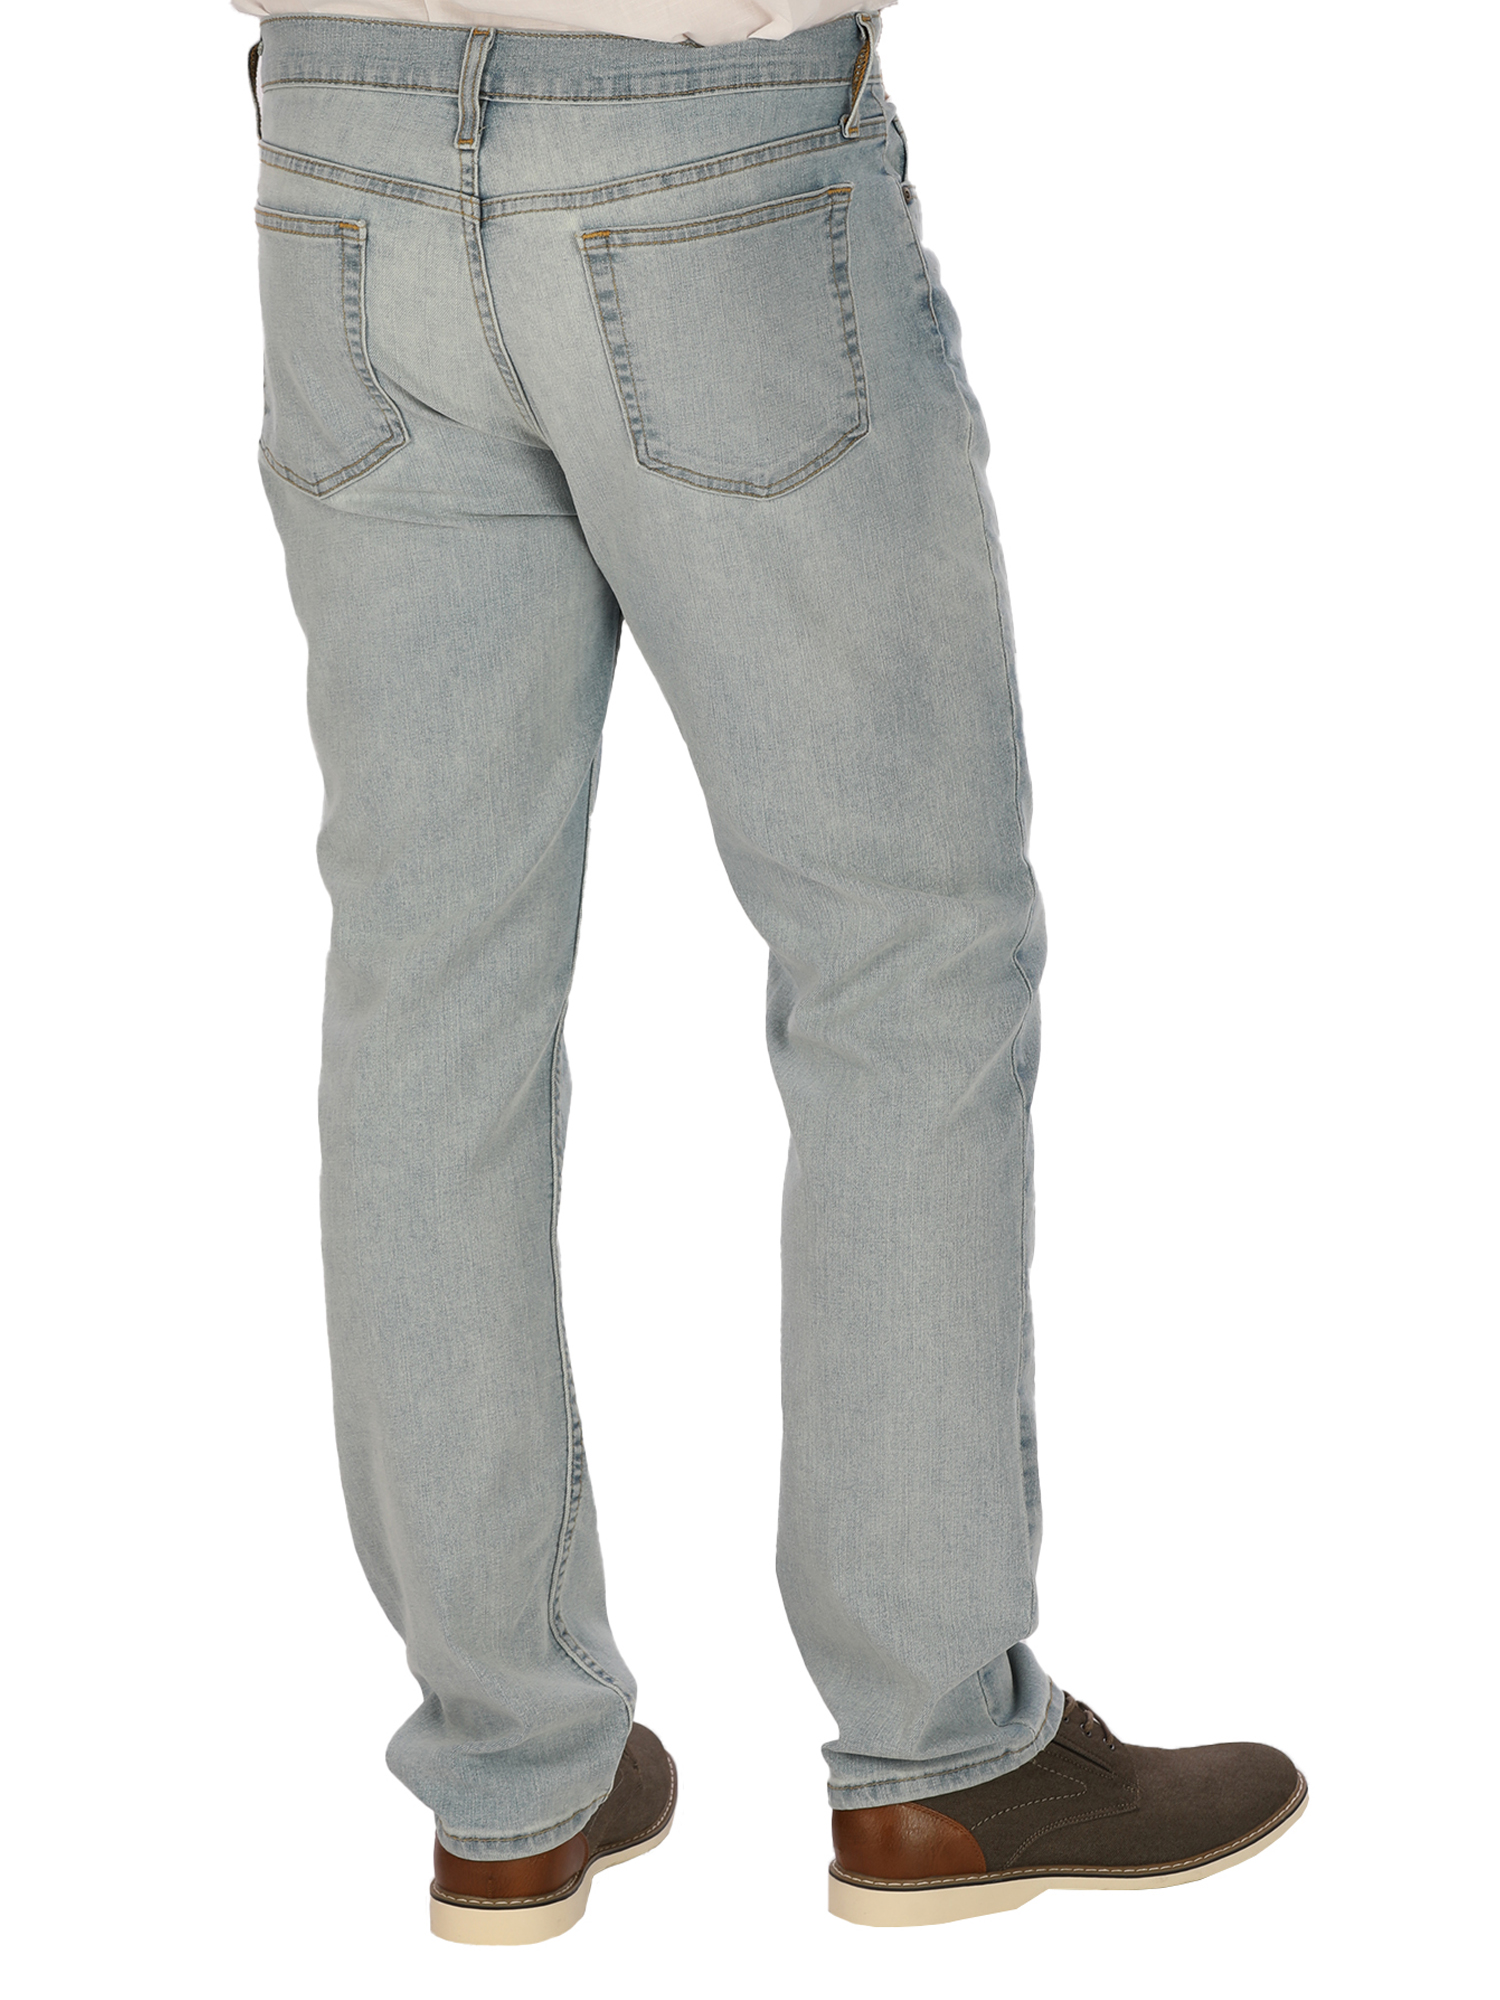 George Men's Slim Fit Jeans - image 4 of 6